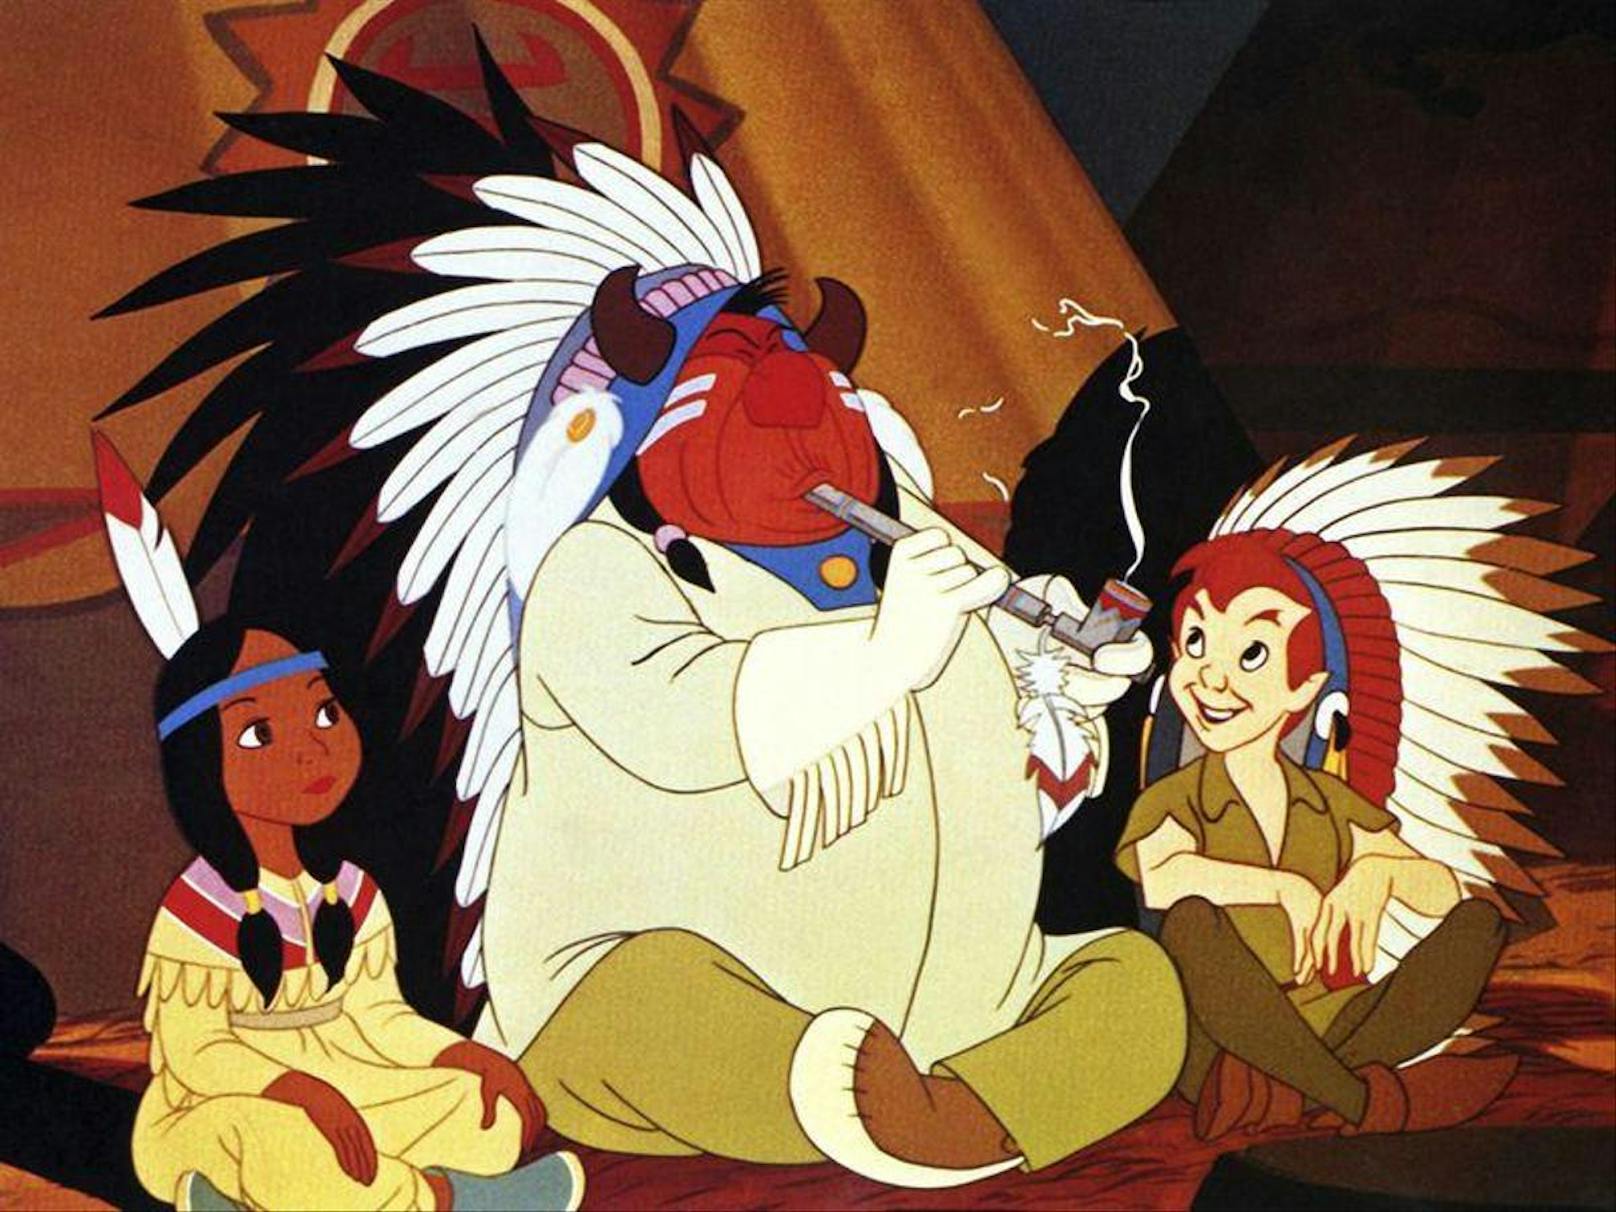 Eine "negative Darstellung von Menschen und Kulturen" findet laut Disney auch in "Peter Pan" (1953) statt. Die indigene Bevölkerung Nordamerikas wird im Film auf stereotypisierte Merkmale reduziert.